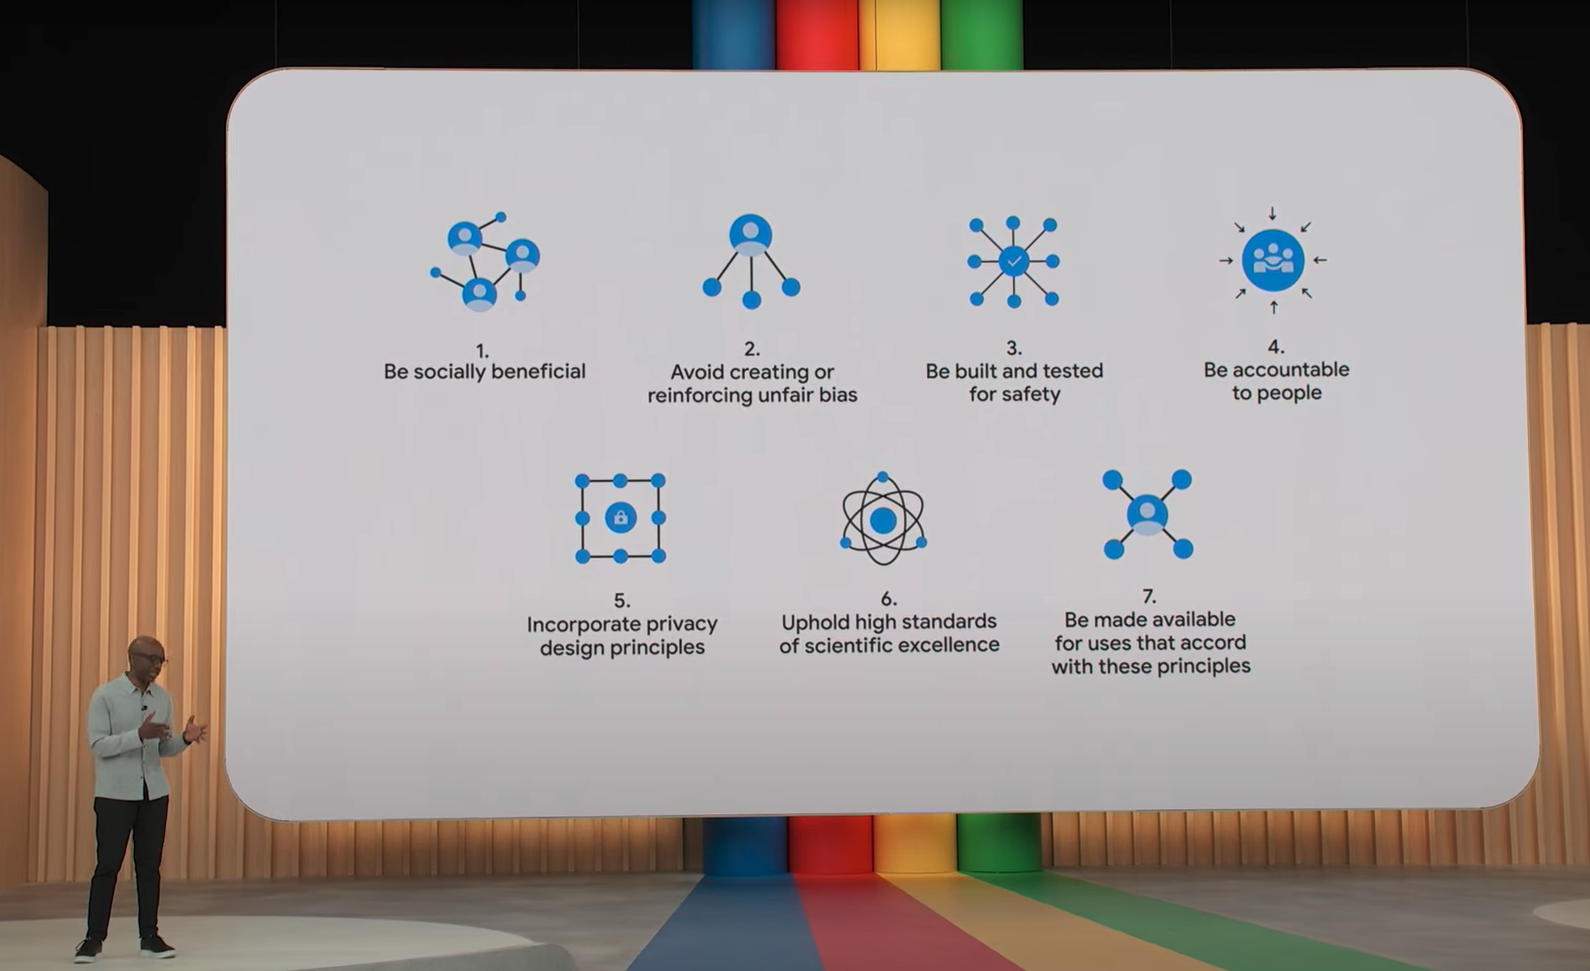 Les 7 objectifs de Google pour rendre l’utilisation de l’IA responsable